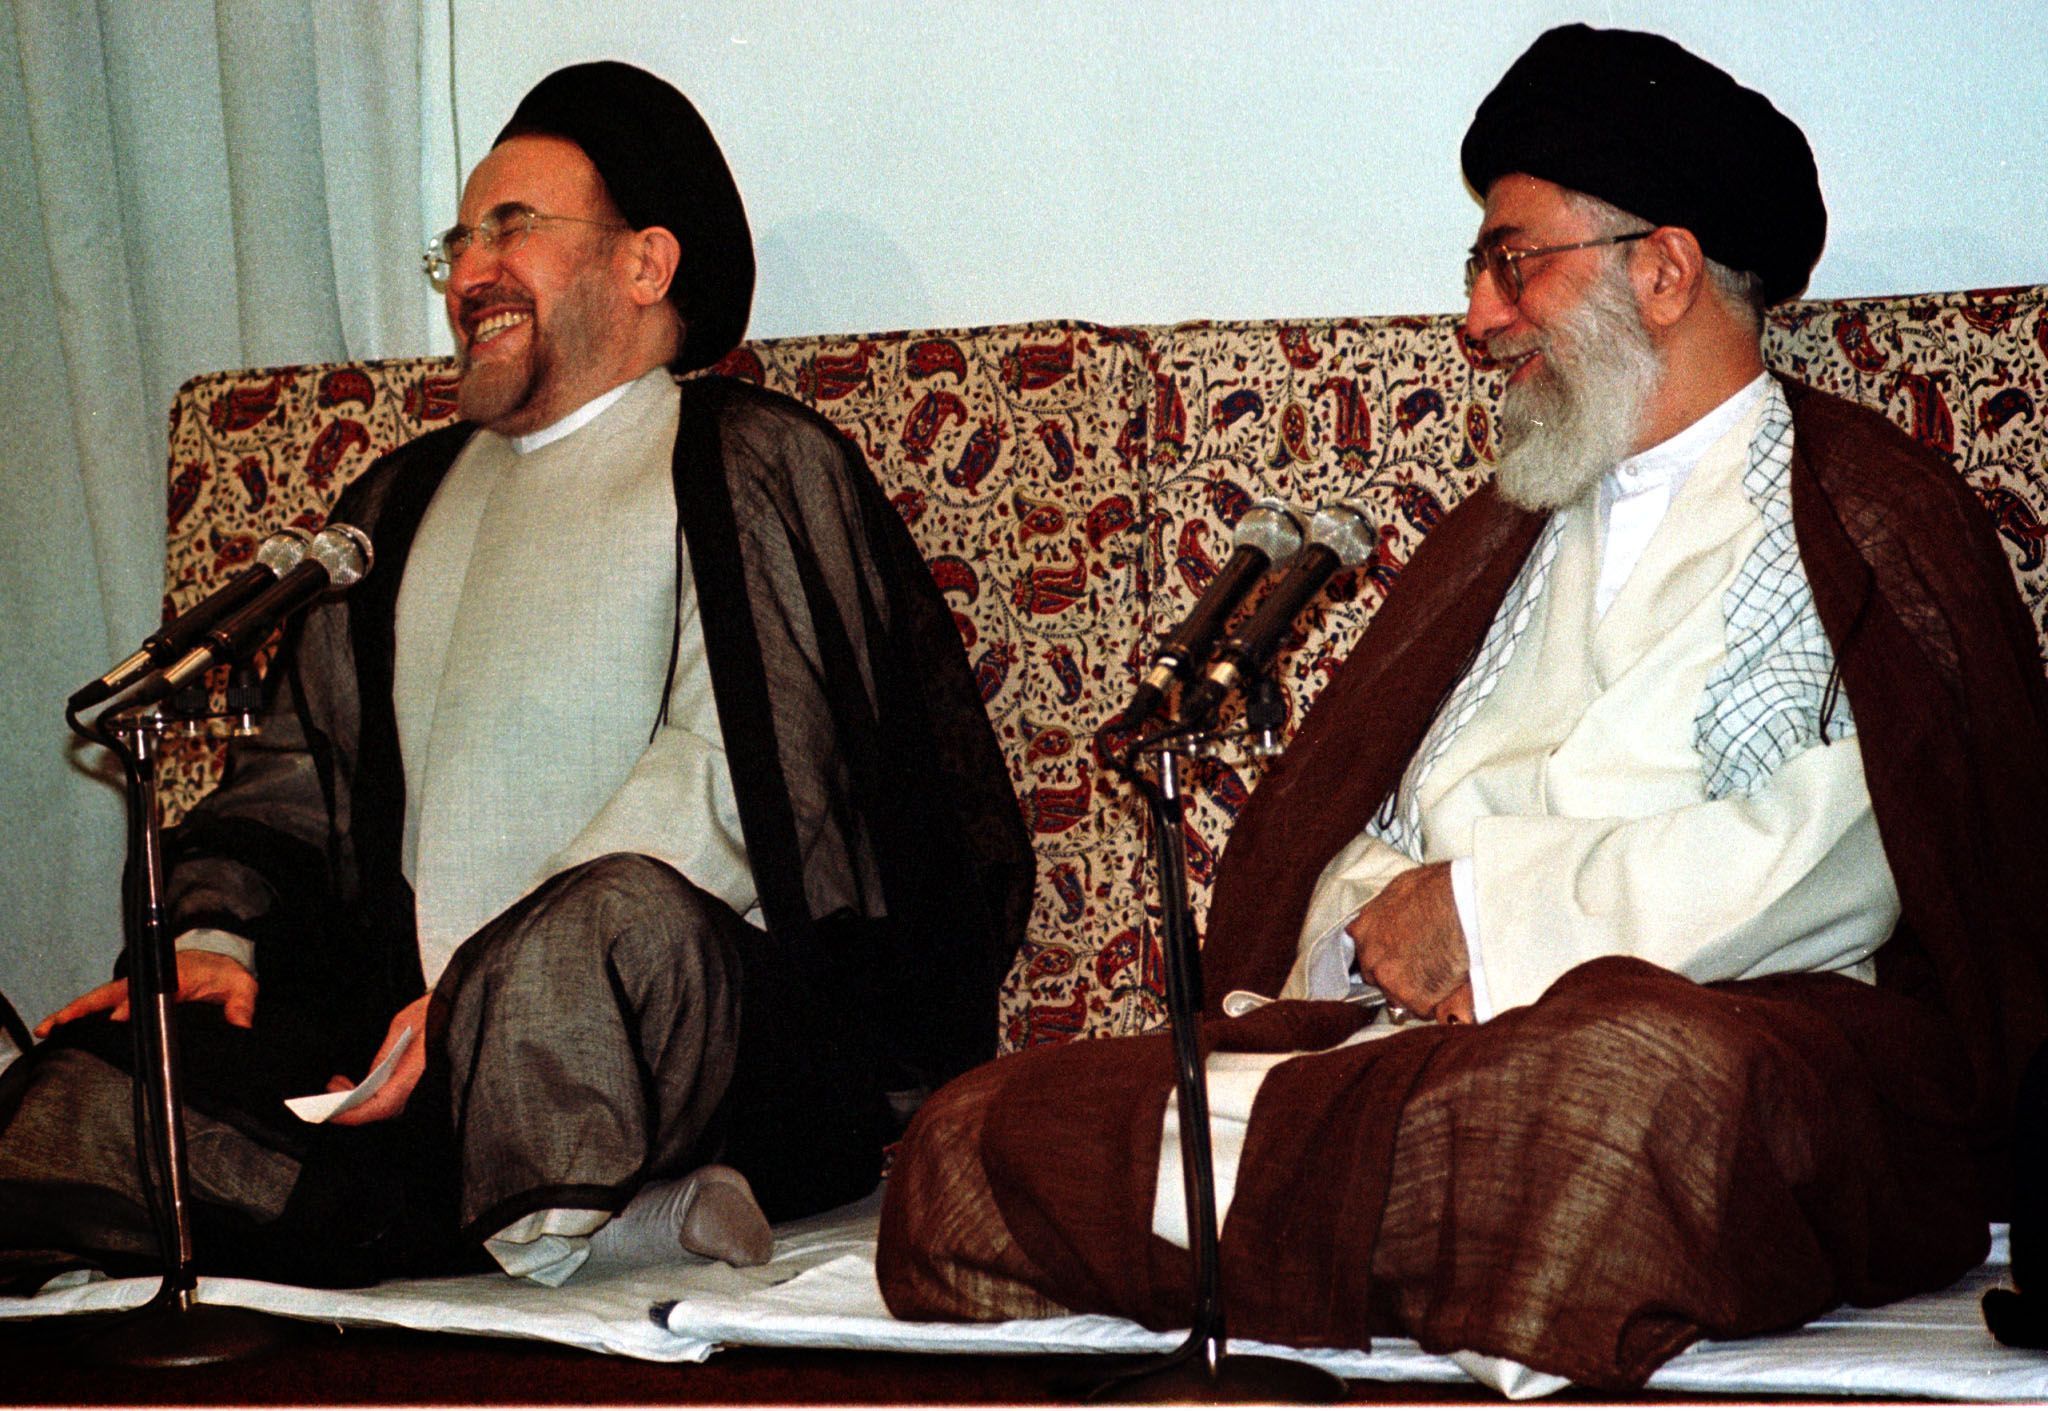 Звуки хатами. Рафсанджани и Хаменеи. Рафсанджани и Хаменеи в молодости. Мохаммад Хатами с семьей. Хатами Мохаммад портрет.